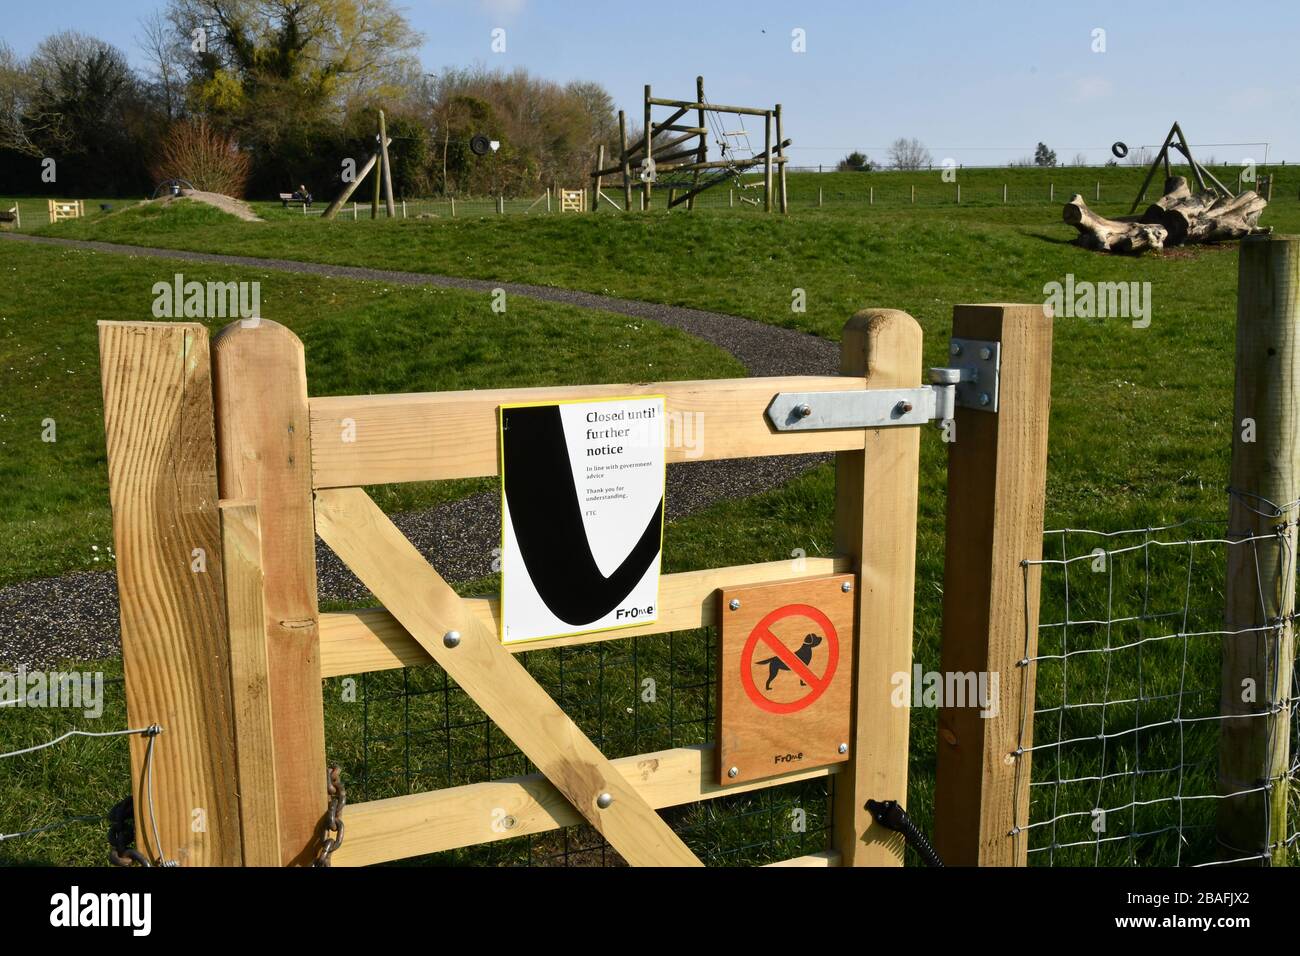 Spielbereich für Kinder aufgrund der Corona-Virusepidemie geschlossen, mit Vorhängeschloss und leer.26. März 2020. Frome, Somerset, Großbritannien Stockfoto